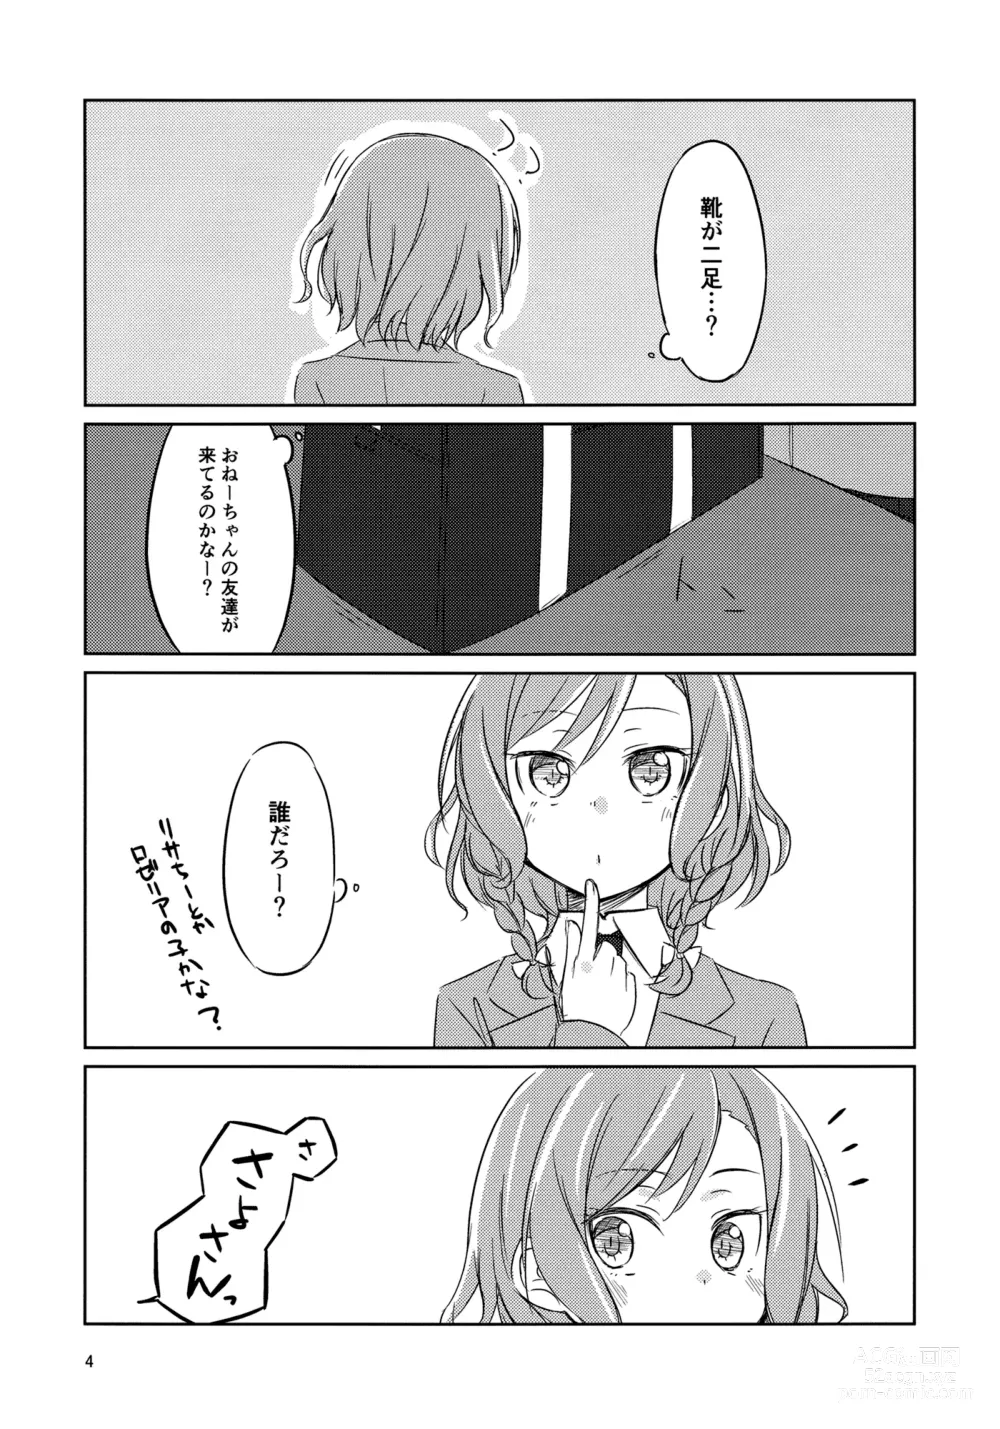 Page 3 of doujinshi Yoru ni Tori o Mita